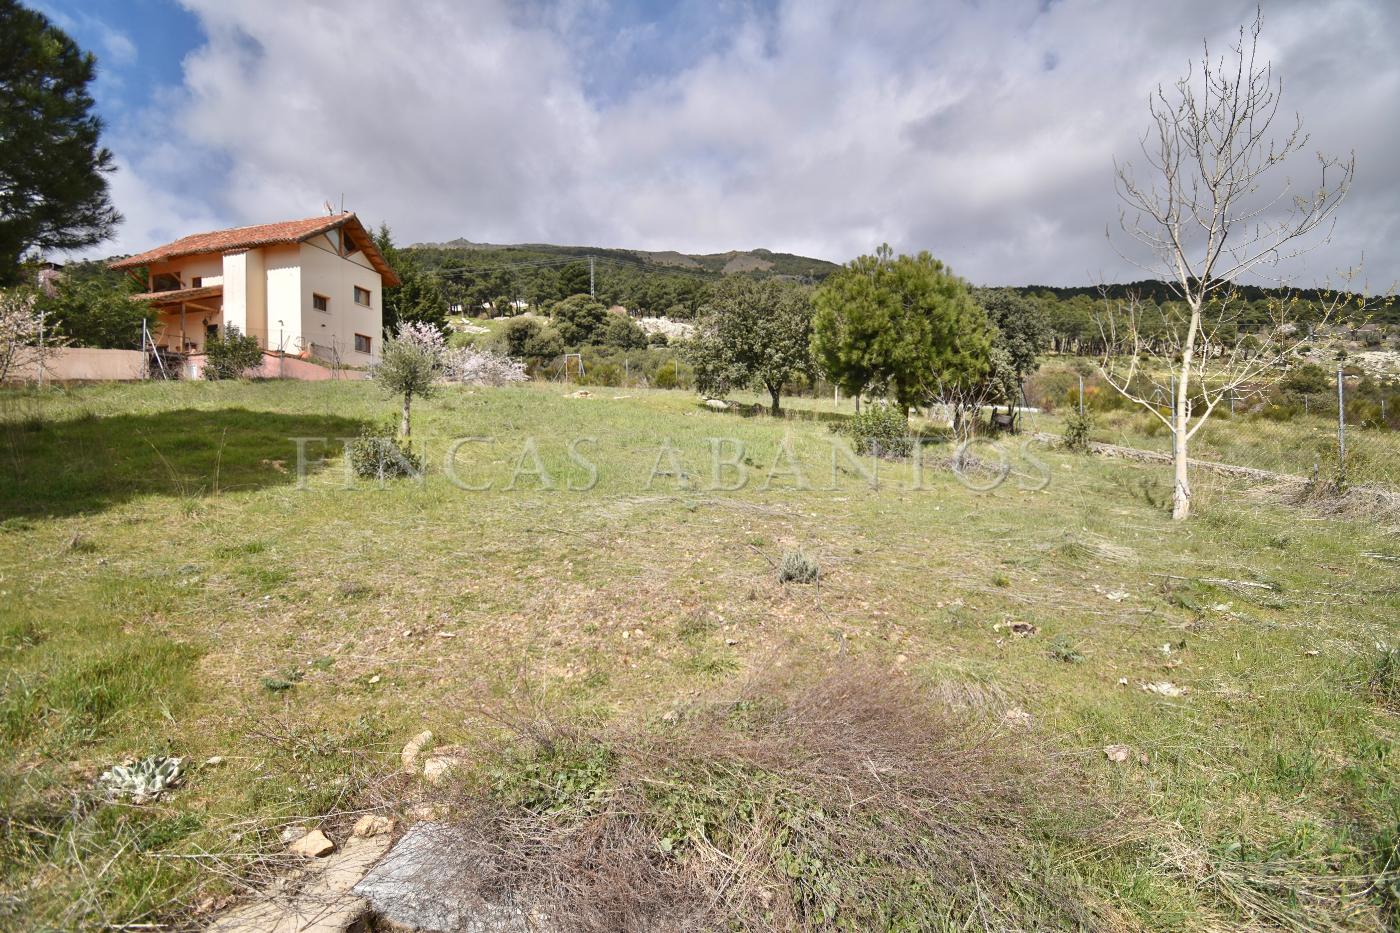 For sale of land in San Lorenzo de El Escorial